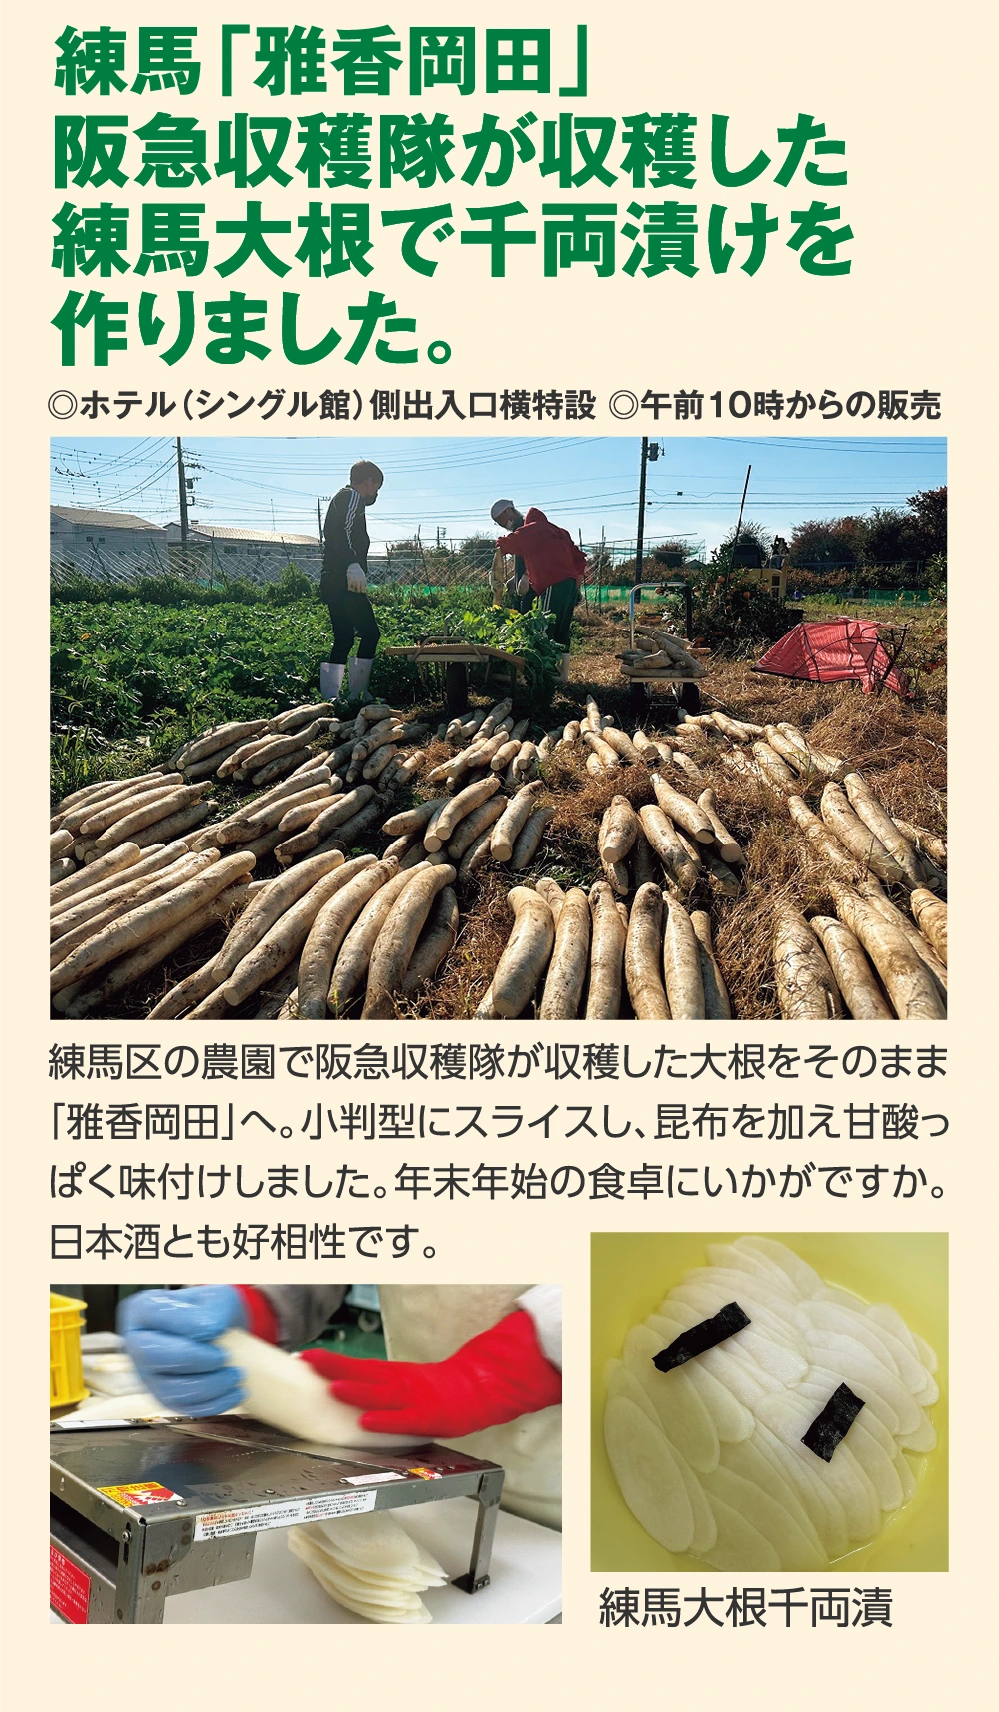 練馬「雅香岡田」阪急収穫隊が収穫した
					練馬大根で千両漬けを
					作りました。